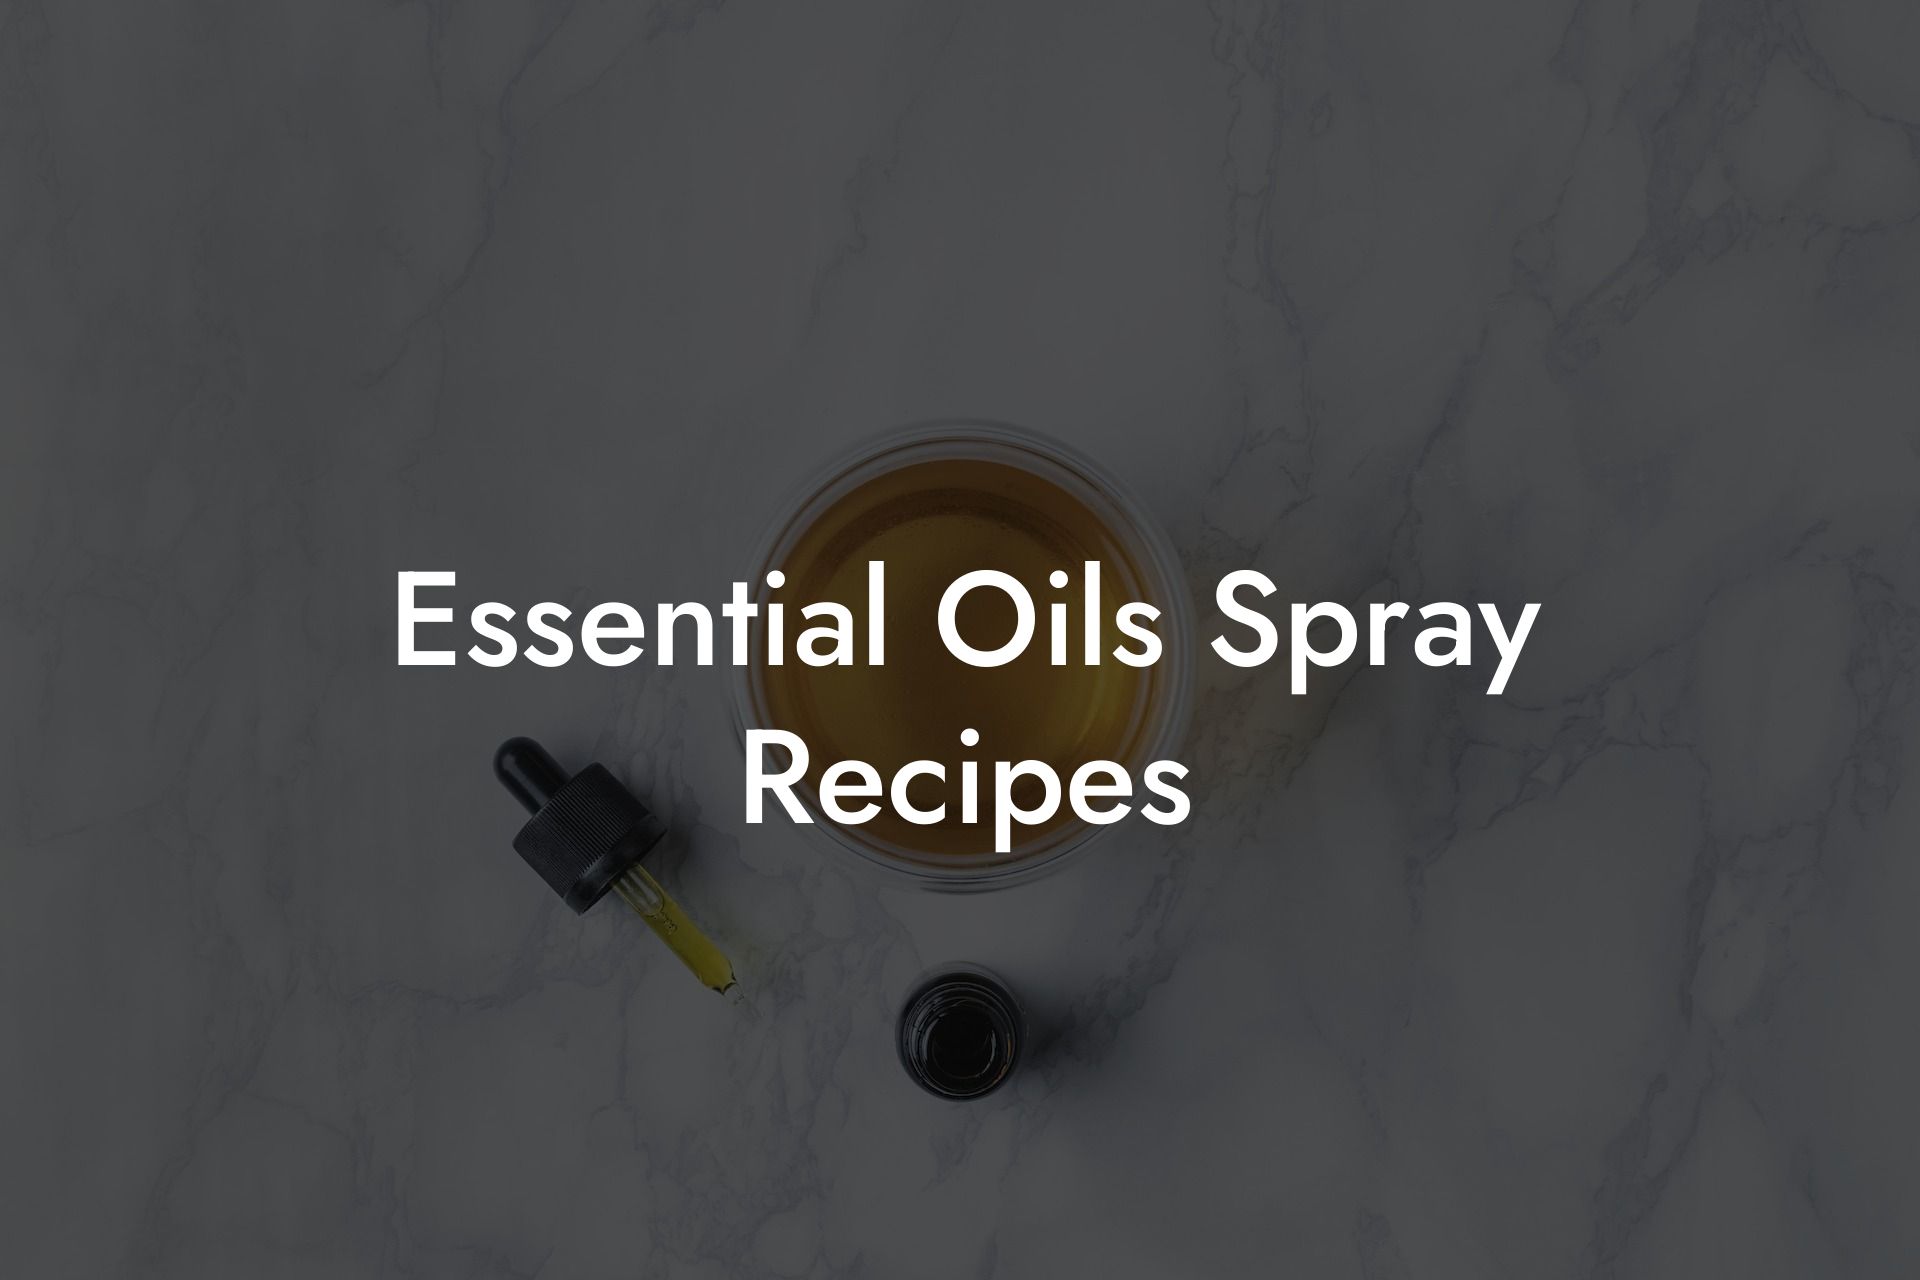 Essential Oils Spray Recipes